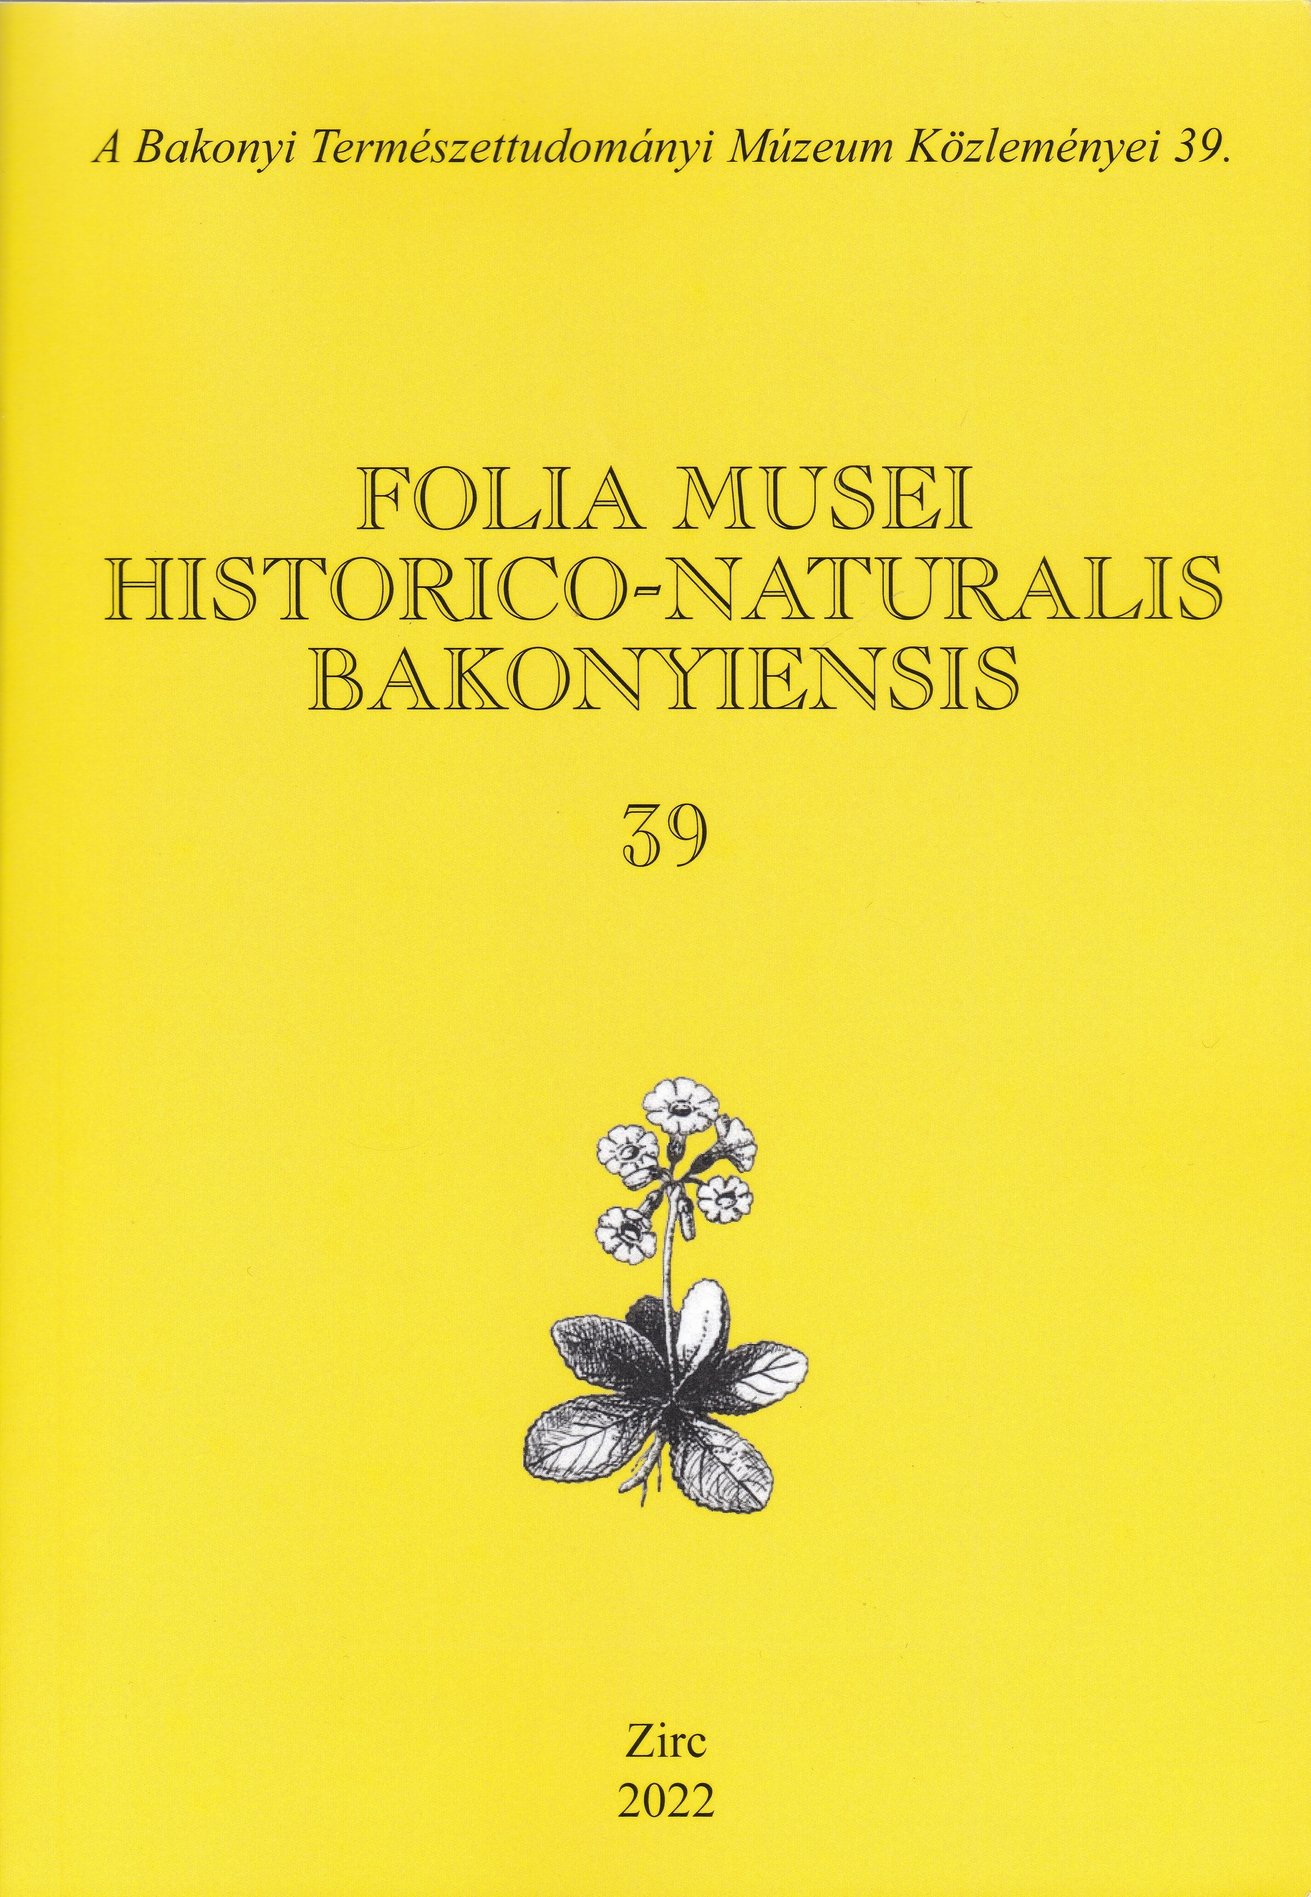 Folia Musei Historico-Naturalis Bakonyiensis. A Bakonyi Természettudományi Múzeum Közleményei 2022/39. (Rippl-Rónai Múzeum CC BY-NC-ND)